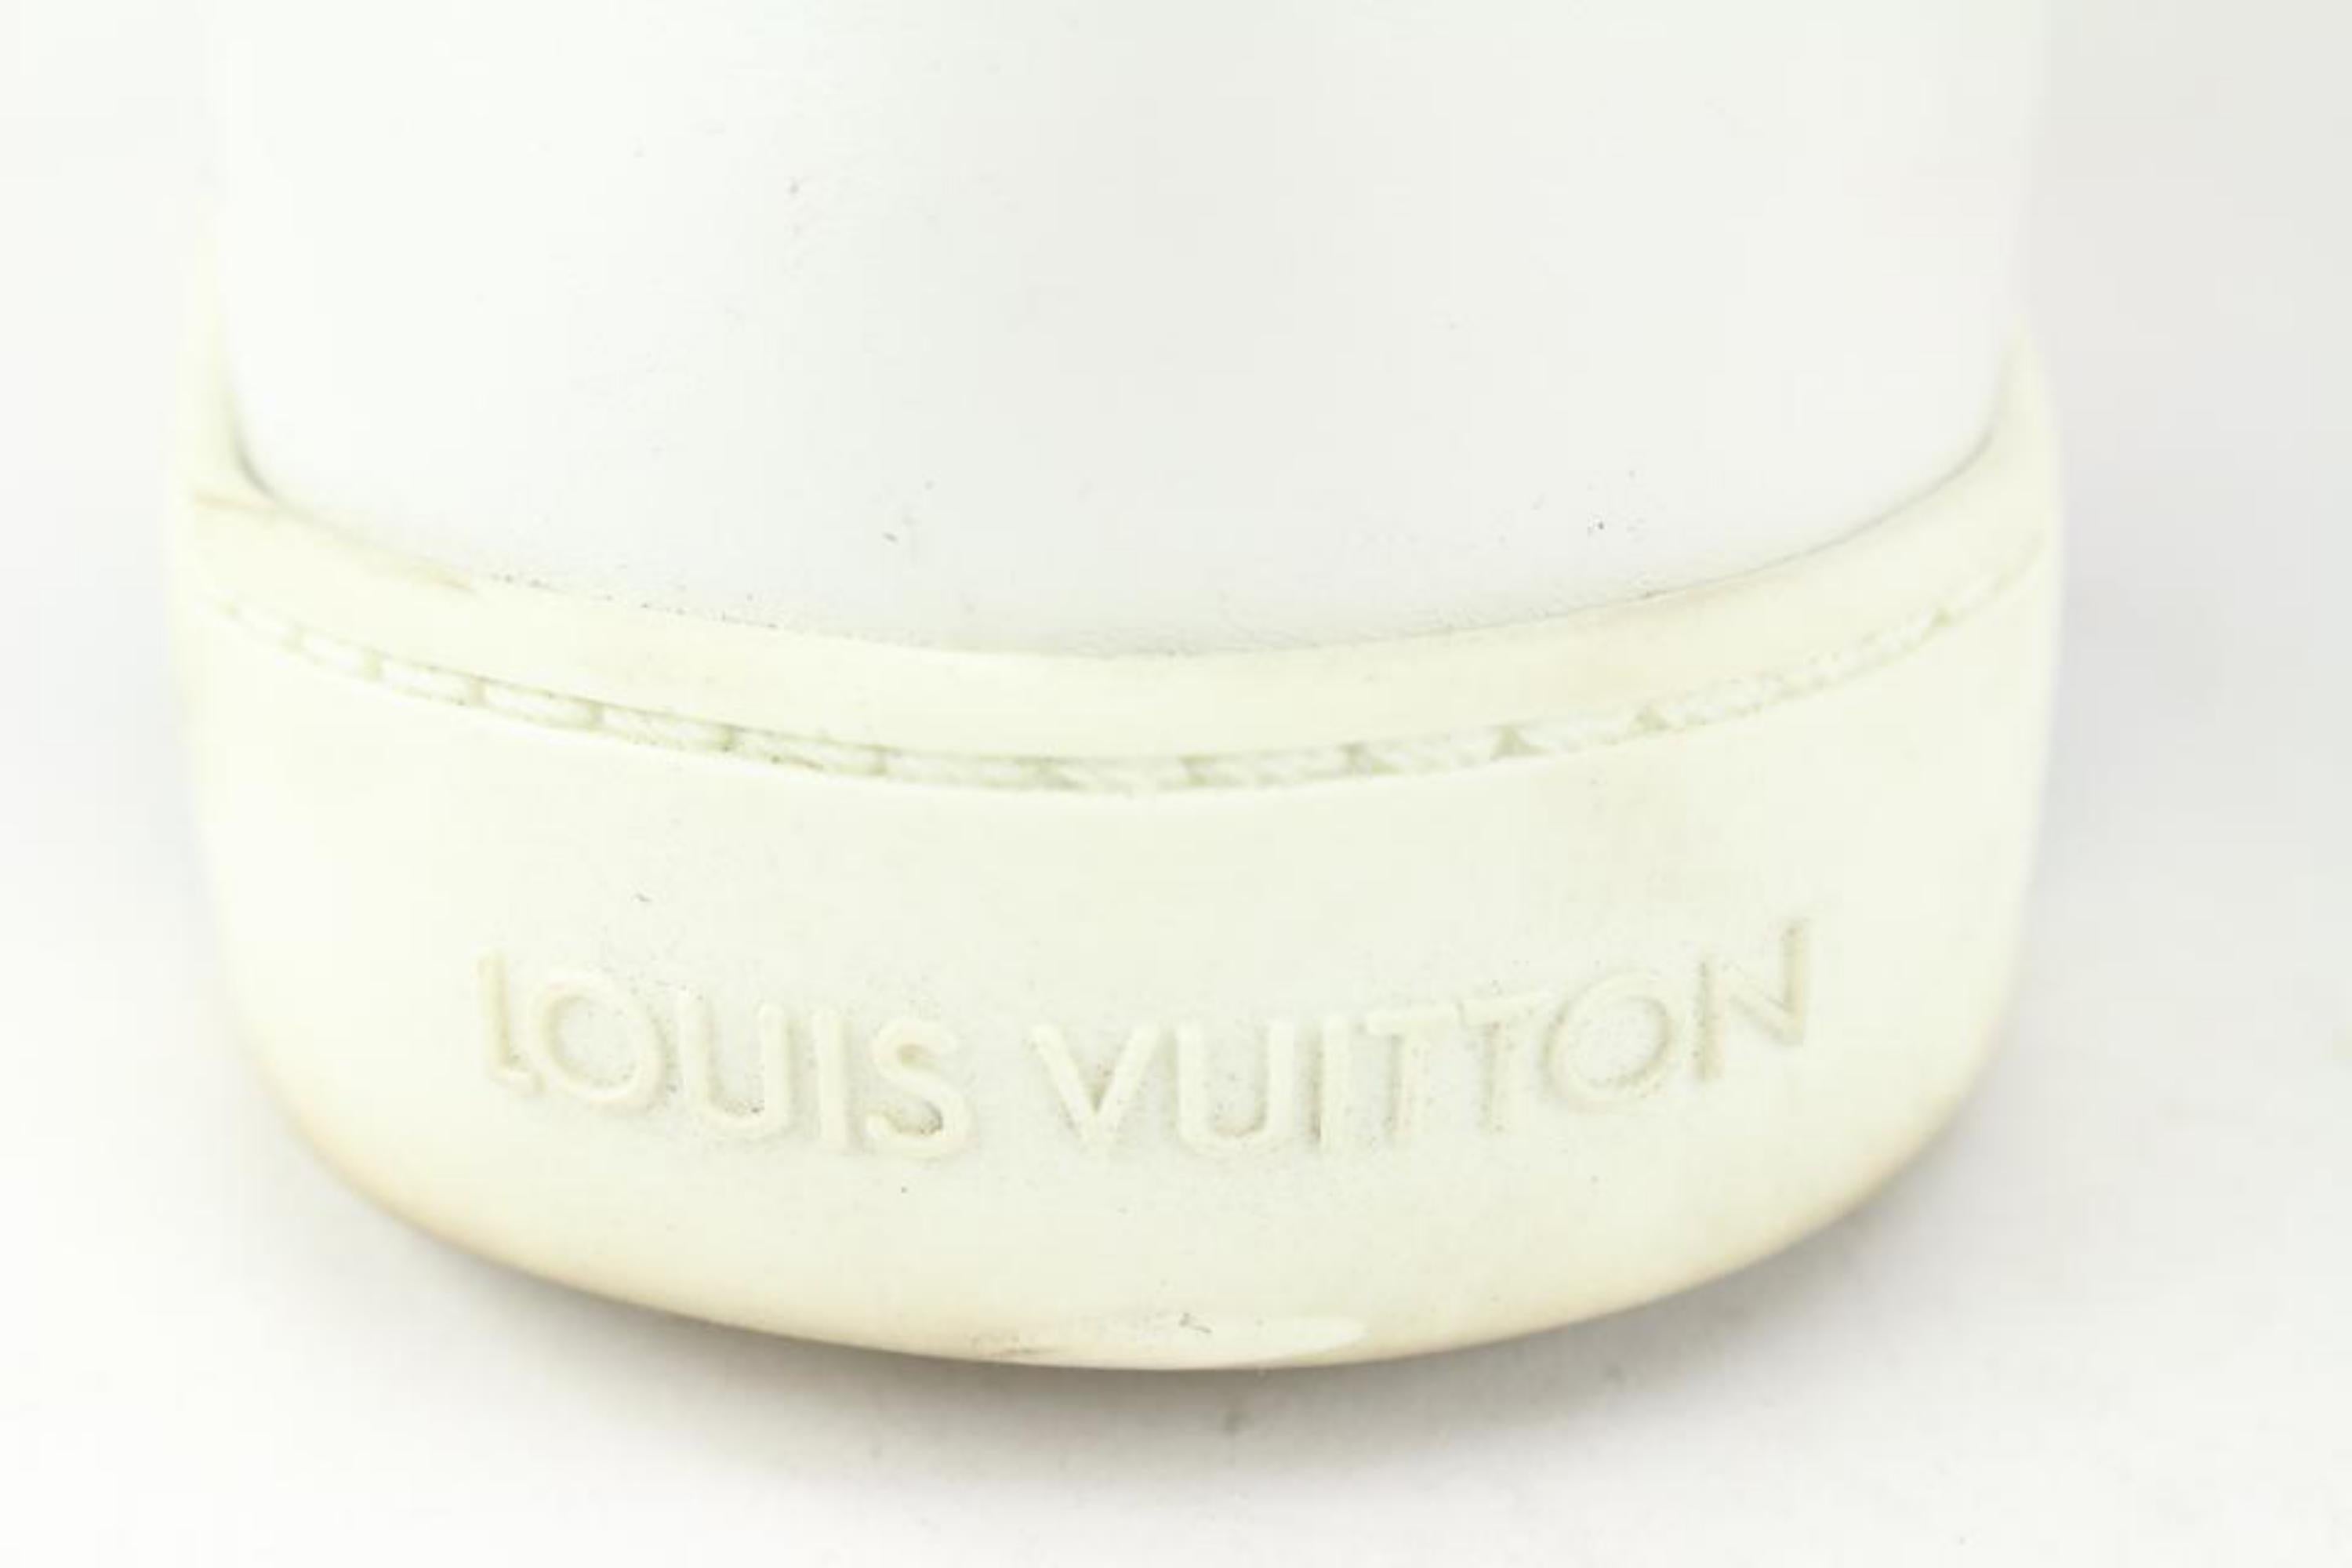 Blanc Baskets Louis Vuitton en cuir Damier Infini blanc vert et blanc pour homme 1117lv8, taille 8,5 US en vente